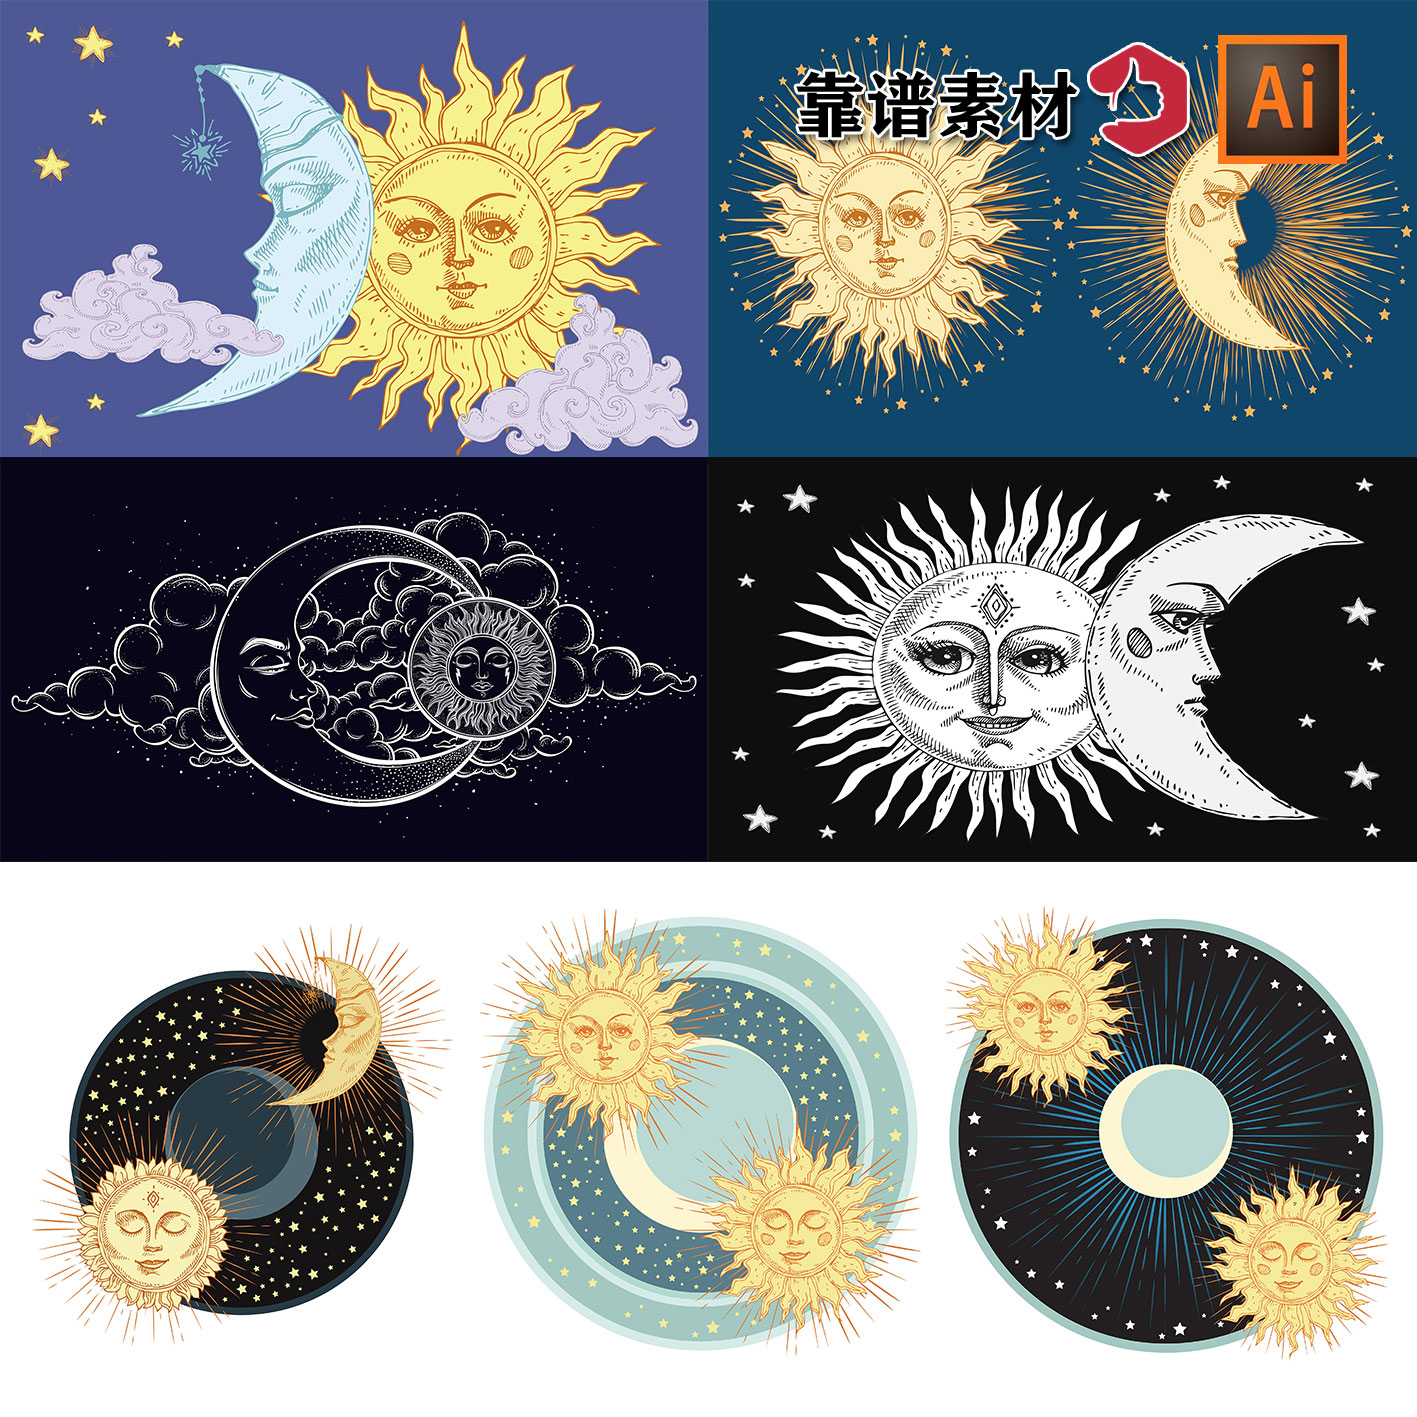 太阳月亮阴晴圆缺星座图腾插画背景AI矢量设计素材